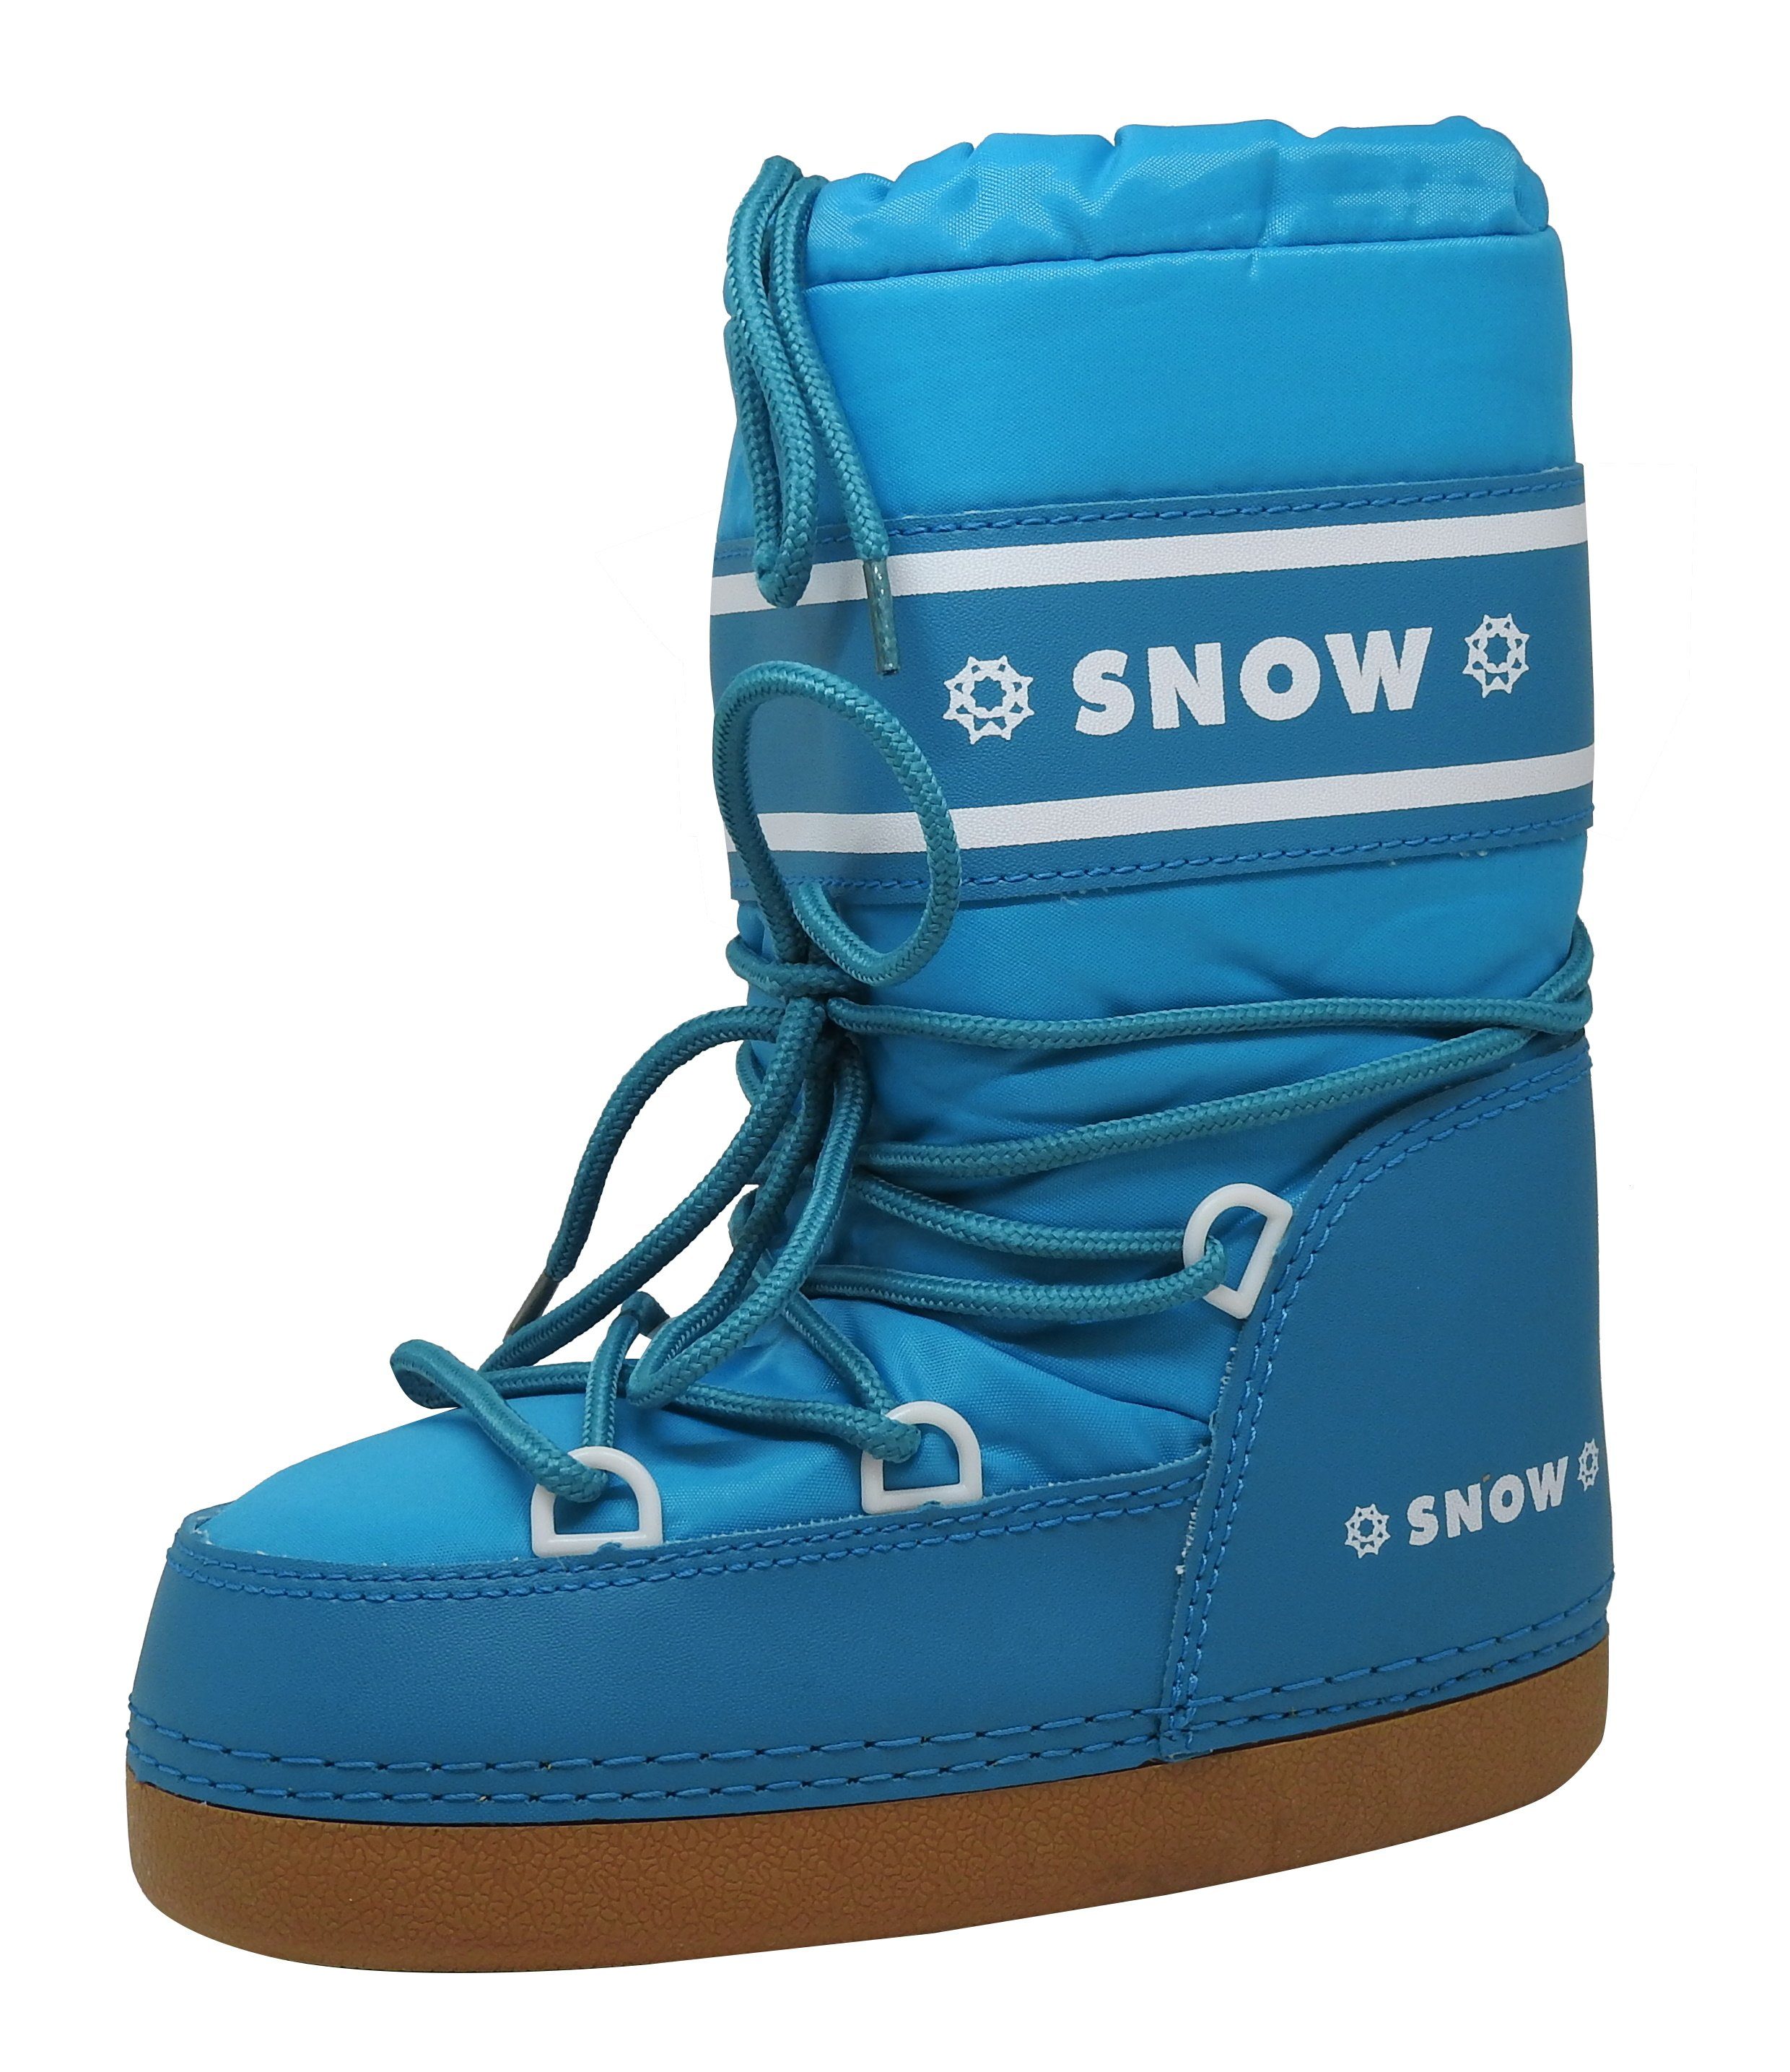 dynamic24 Snowboots Jungen Mädchen Winterstiefel Winter Schuhe Stiefel  Schneeschuhe Snowboots Boots türkis